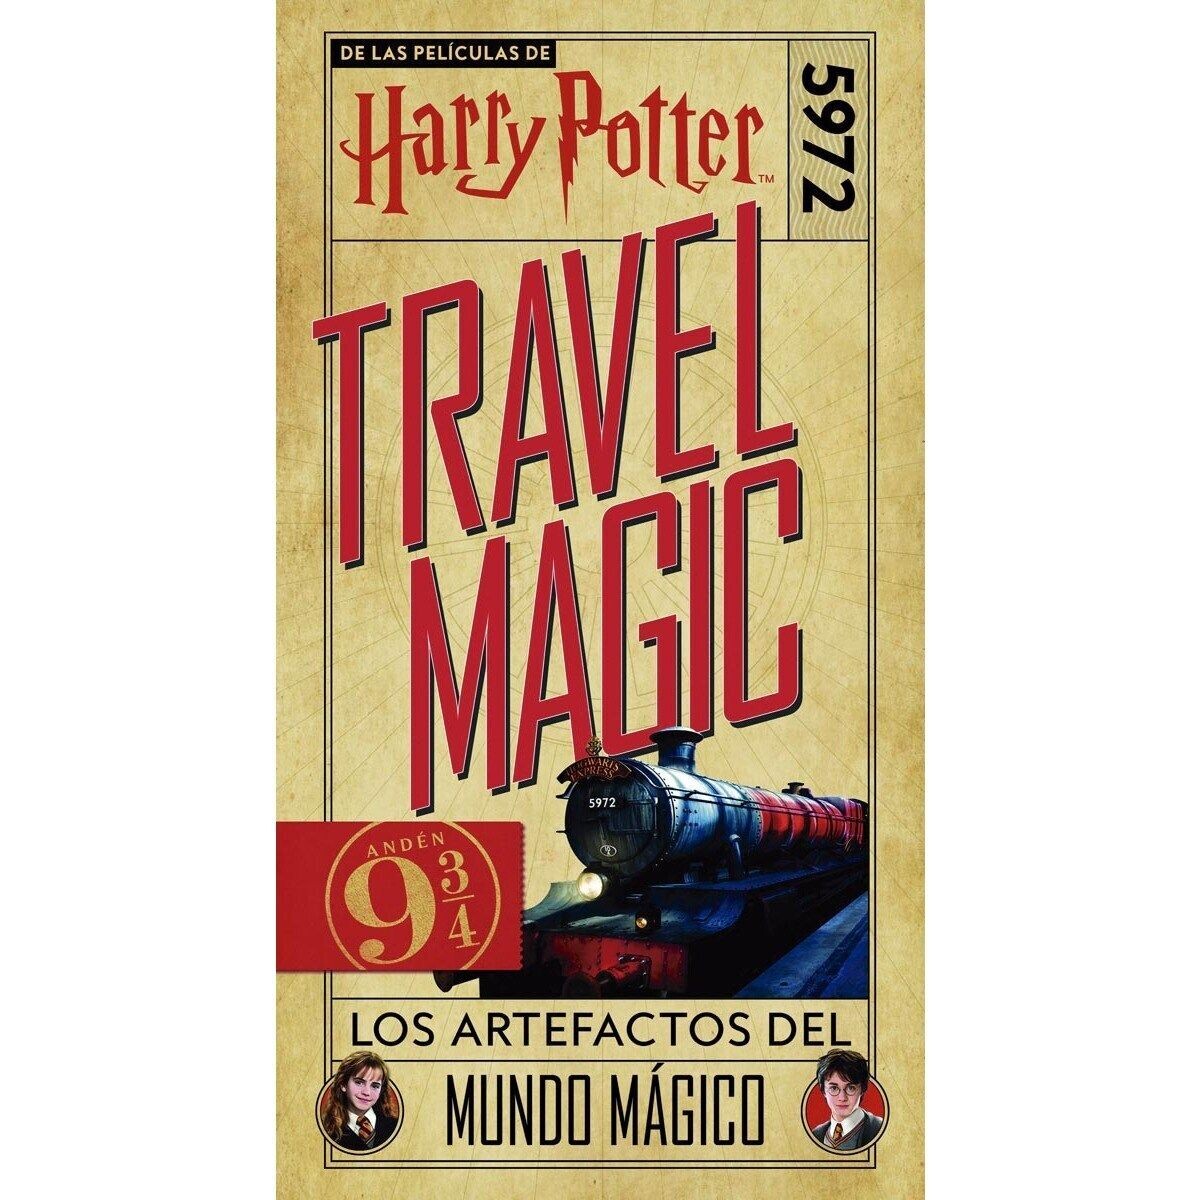 Harry Potter - Travel Magic: Los Artefactos del Mundo Mágico